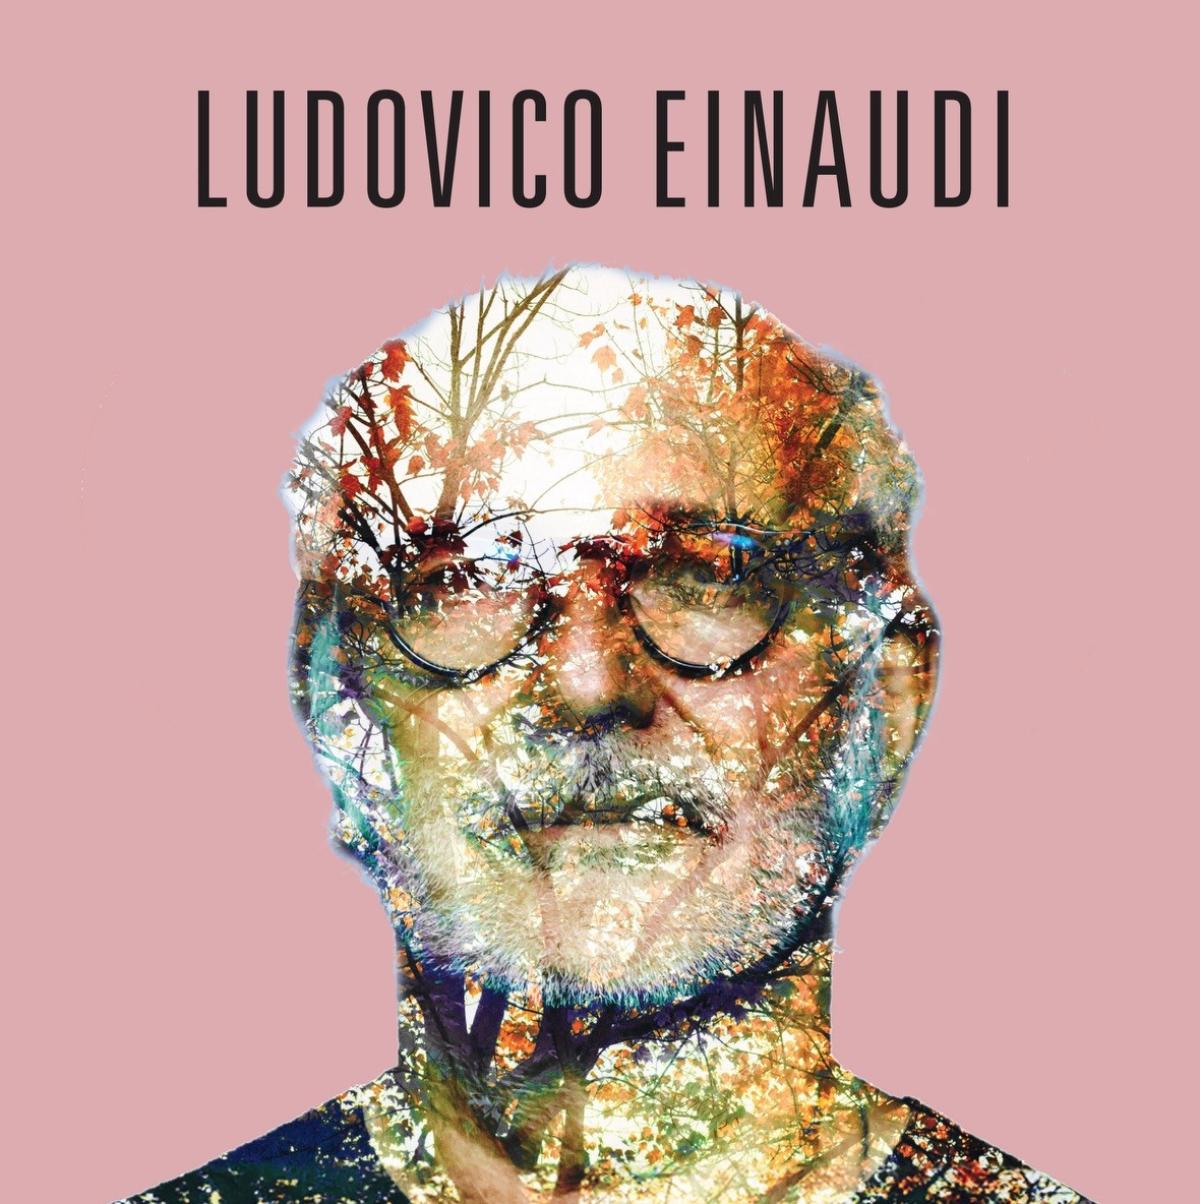 Ludovico Einaudi at Cavea Auditorium Parco della Musica Tickets